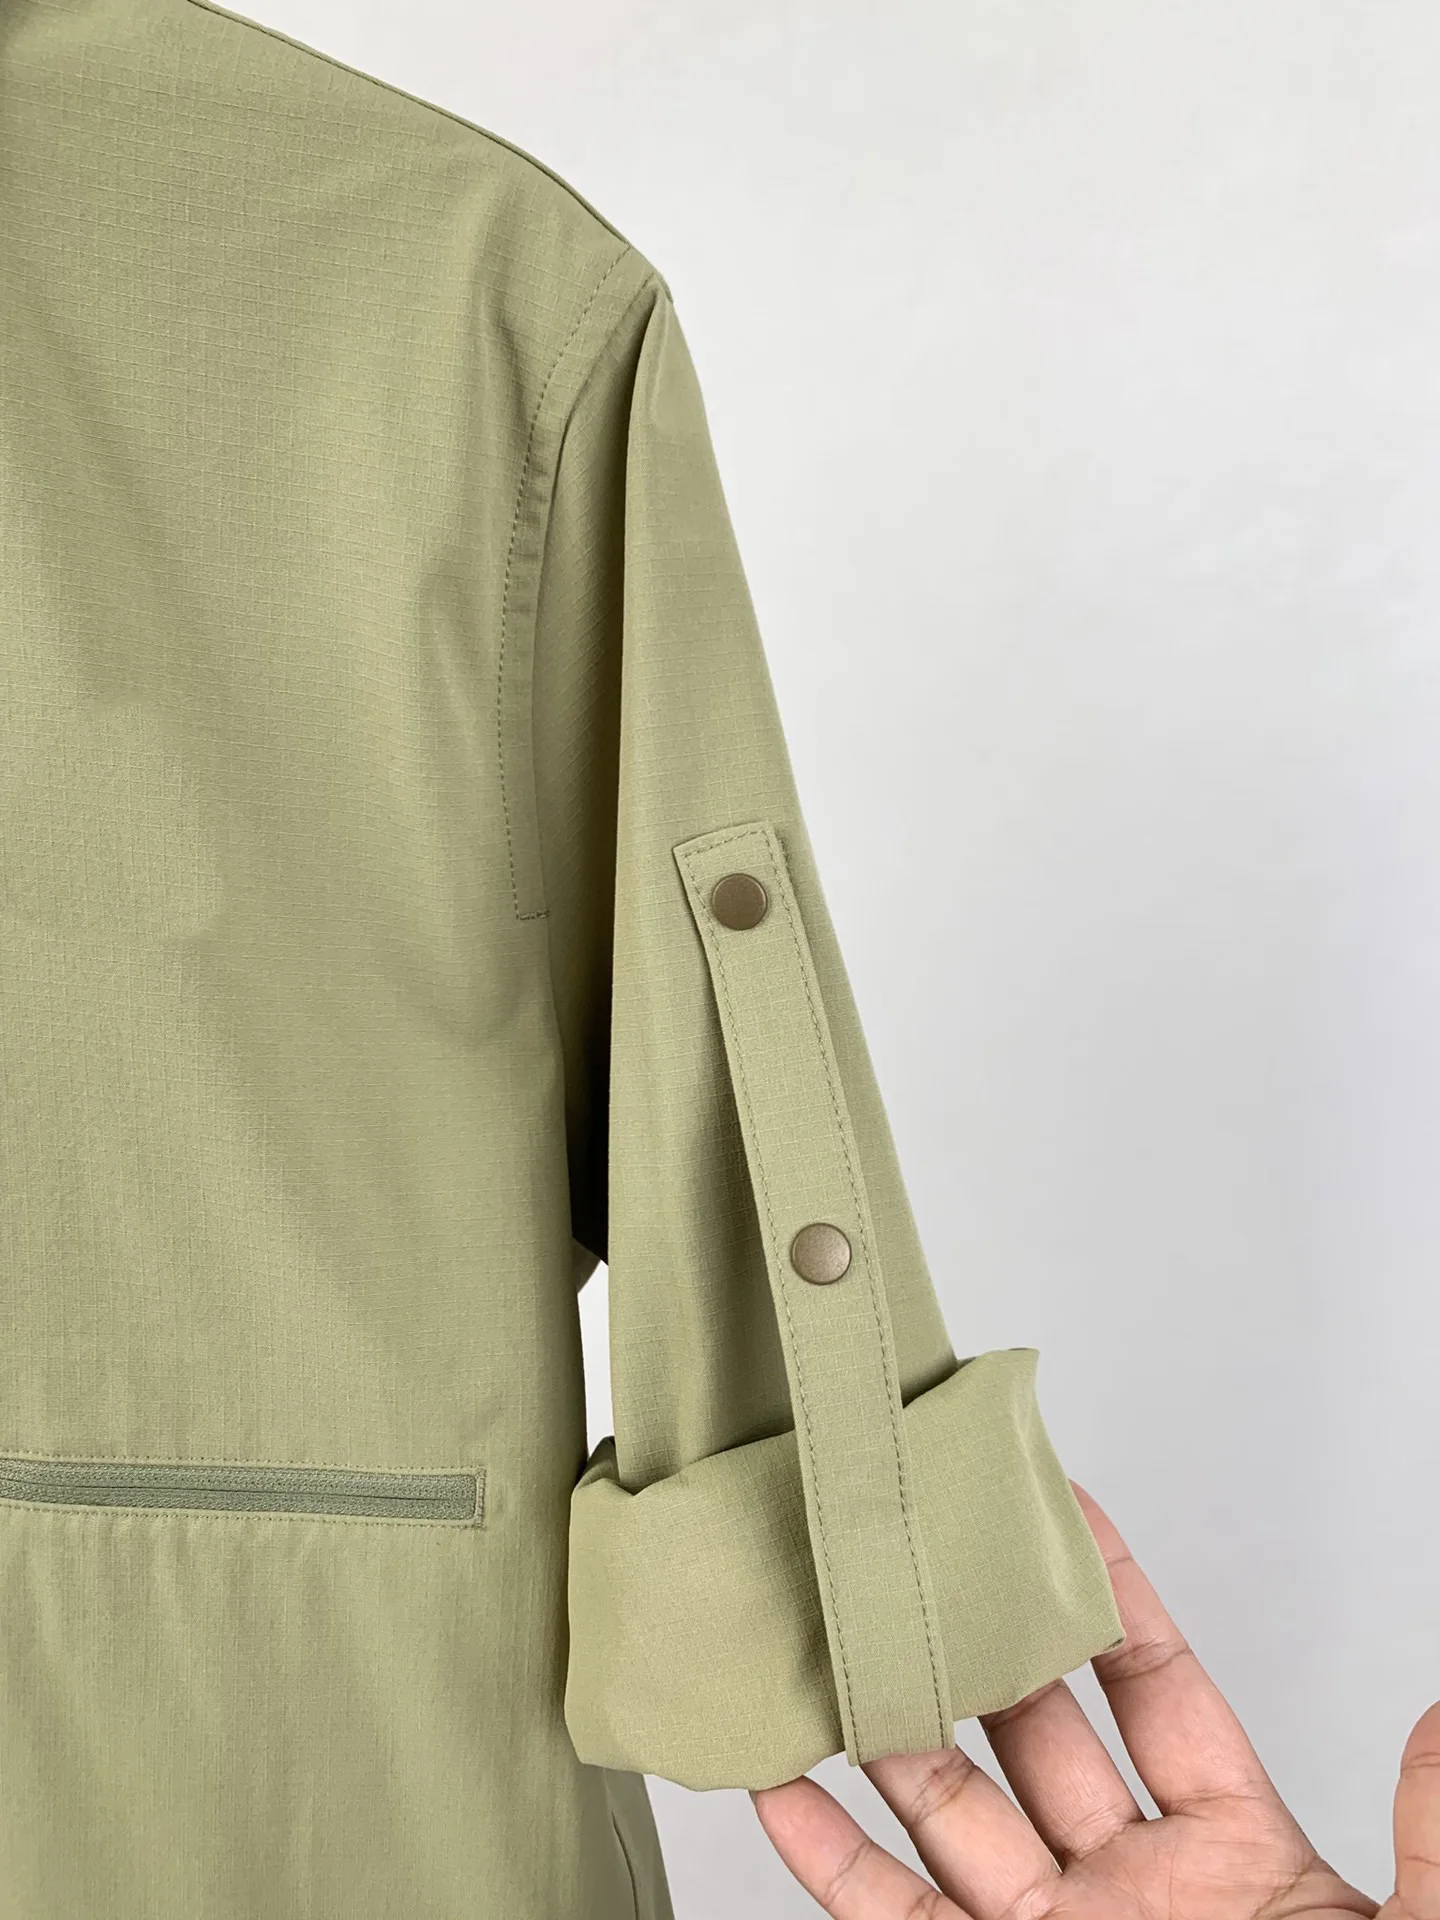 Tričko styl lehká bunda, stylová barva a funkční tkaniny kombinaci s vodou a funkce2